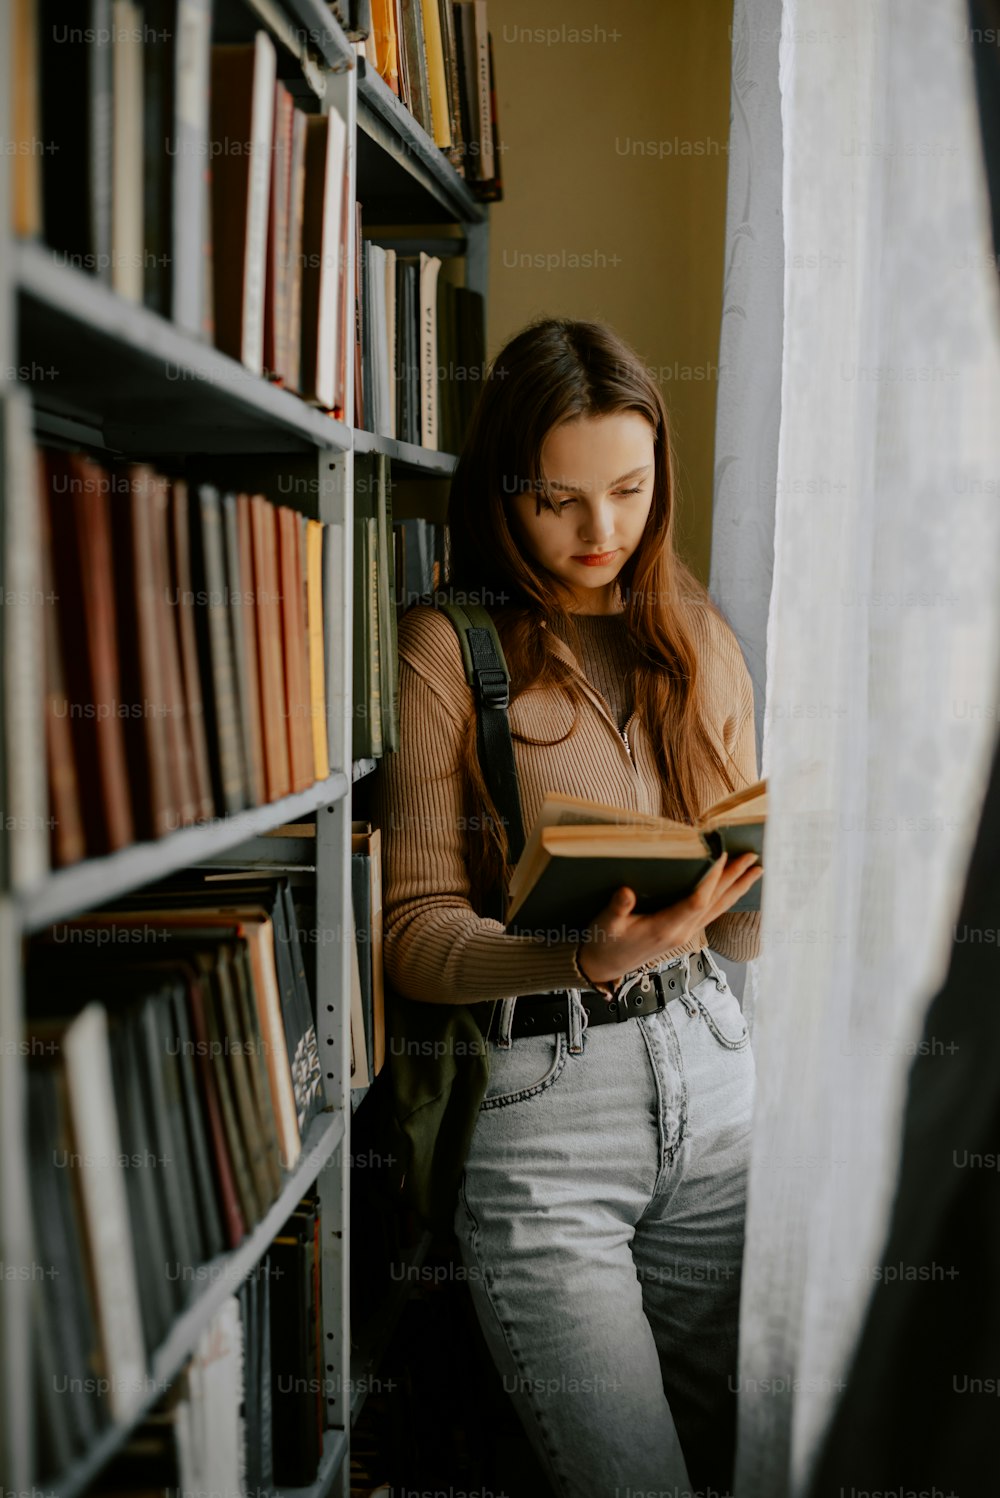 Une femme lit un livre dans une bibliothèque